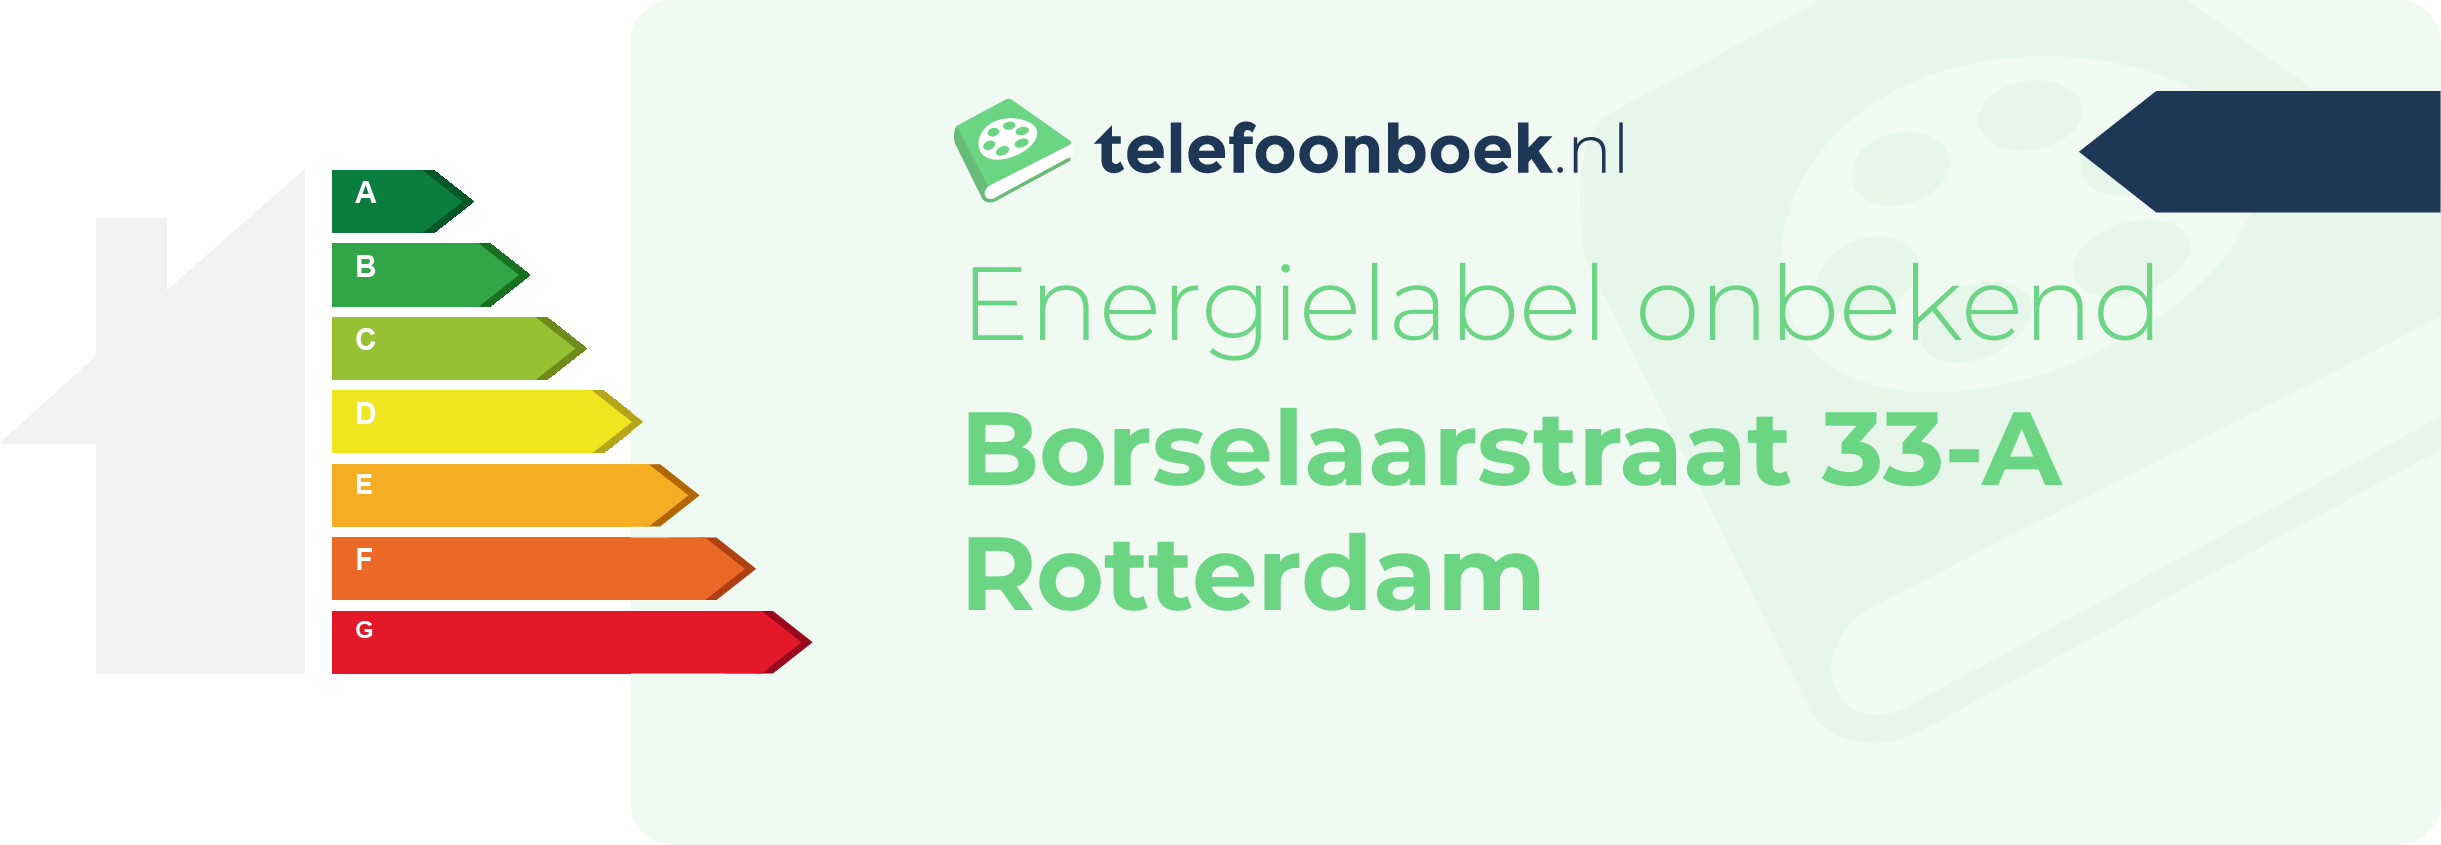 Energielabel Borselaarstraat 33-A Rotterdam